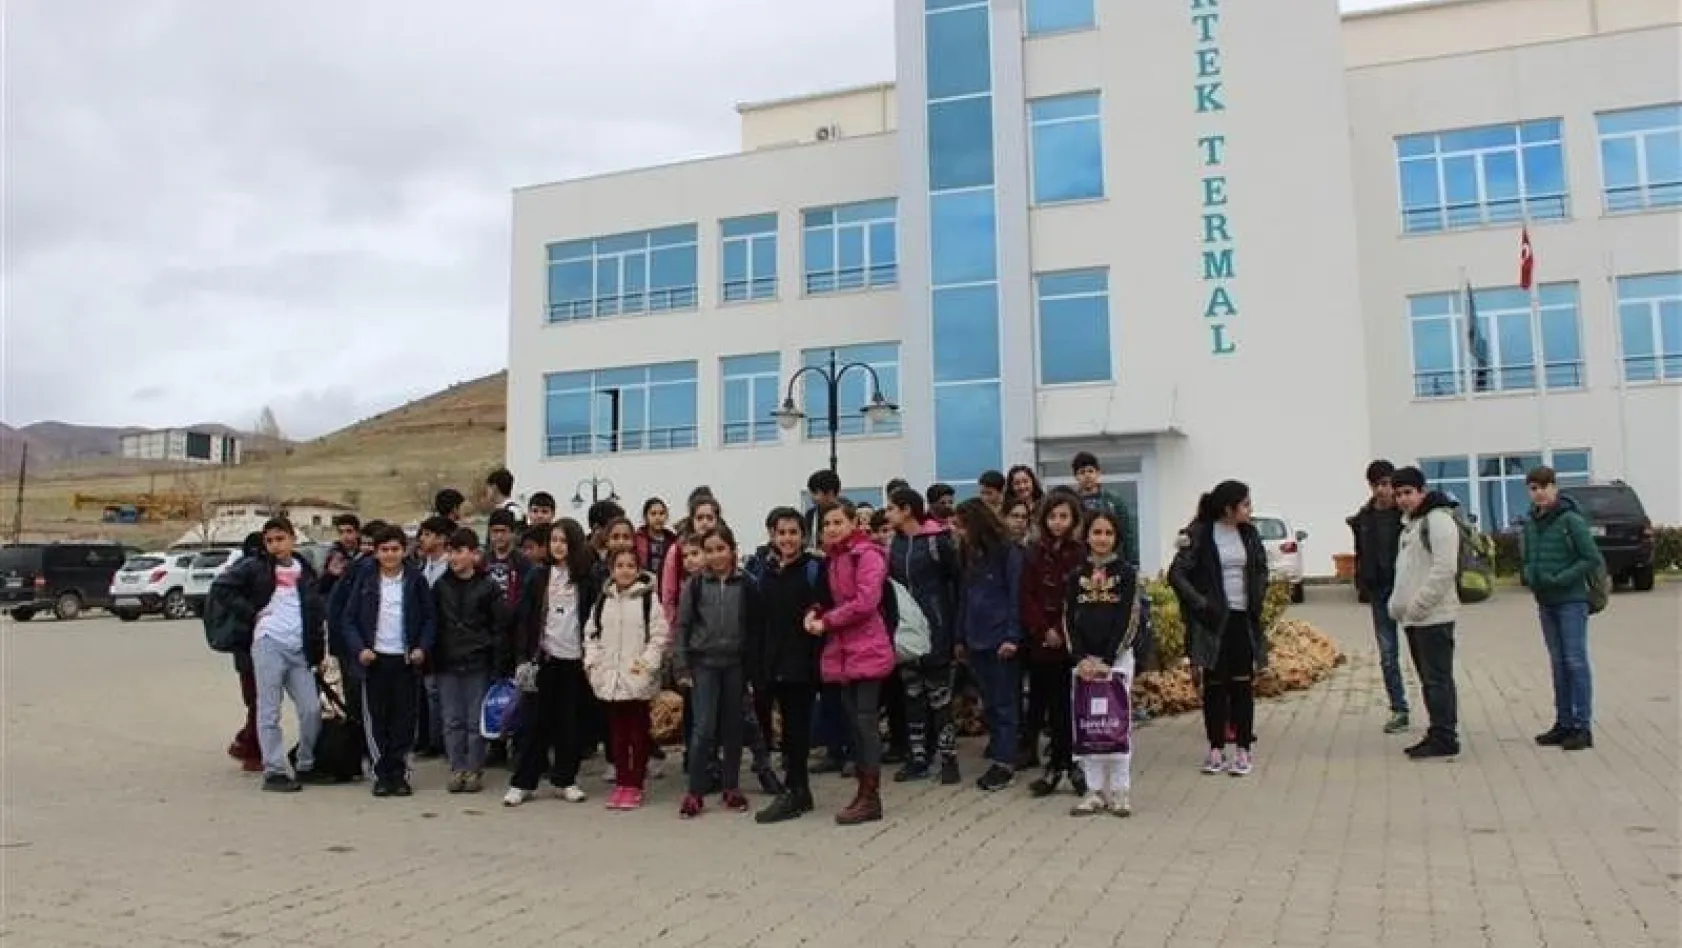 Tunceli Belediyesi'nden başarılı öğrencilere termal gezisi
